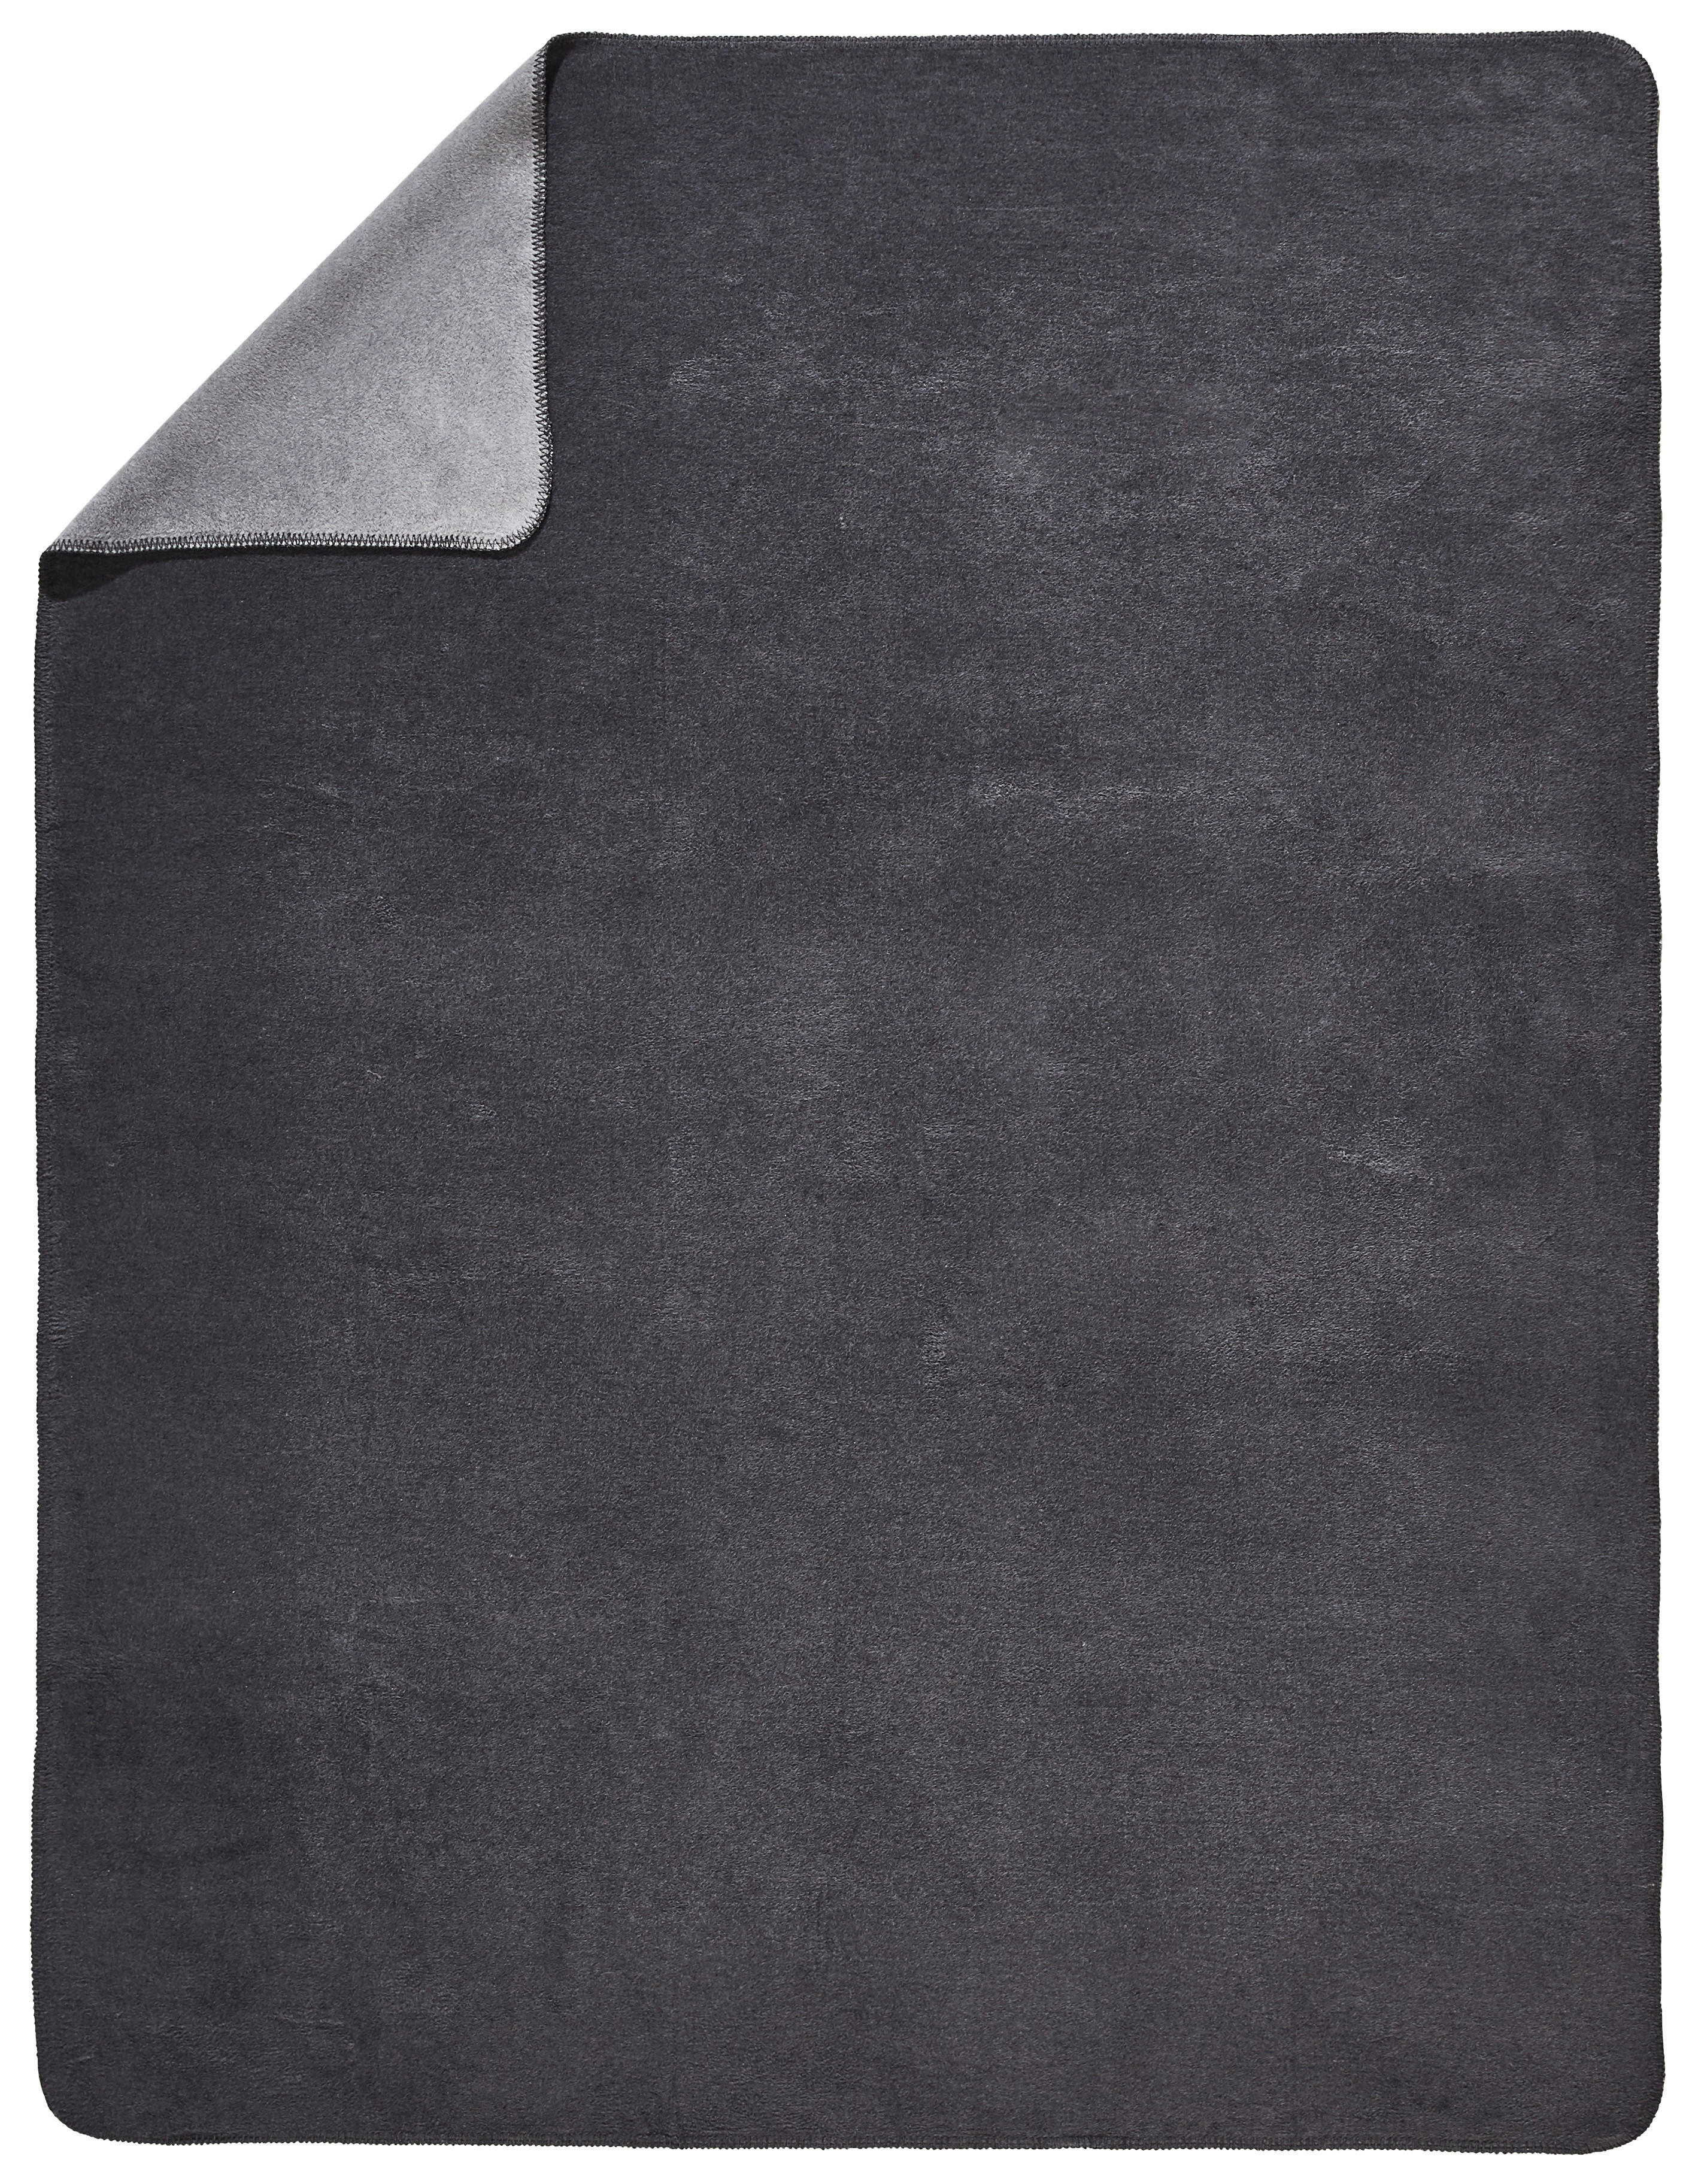 WOHNDECKE DE VELA NOVEL 150/200 cm  - Anthrazit/Silberfarben, Basics, Textil (150/200cm) - Novel